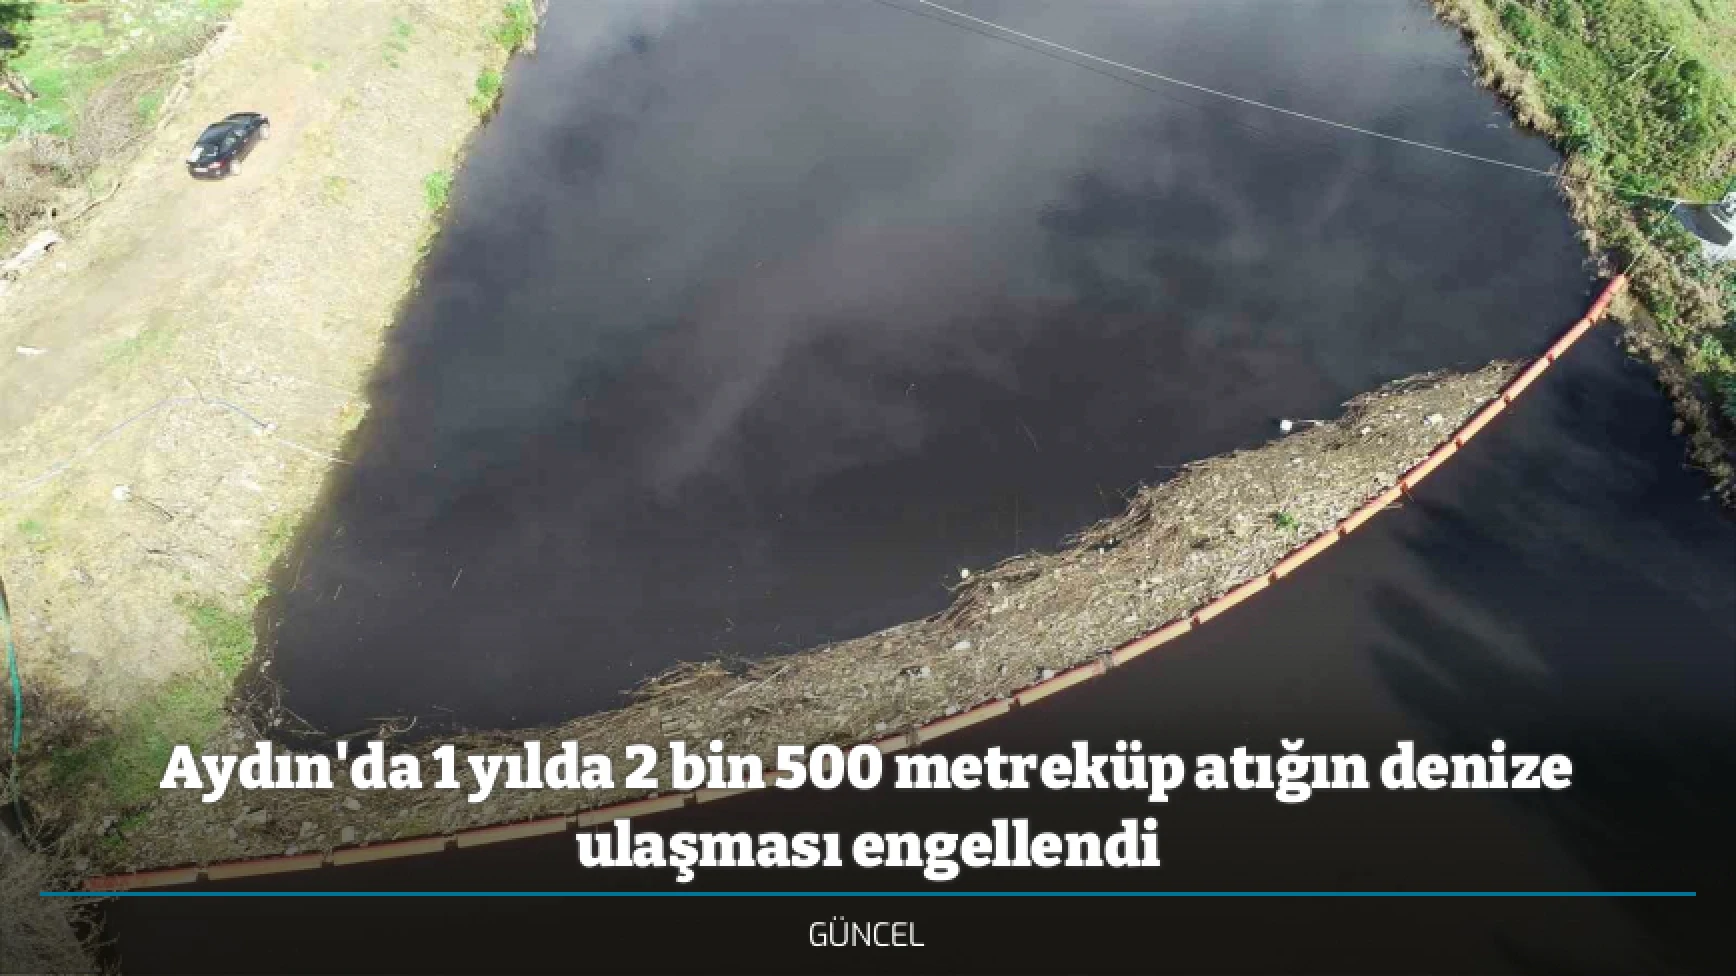 Aydın'da 1 yılda 2 bin 500 metreküp atığın denize ulaşması engellendi